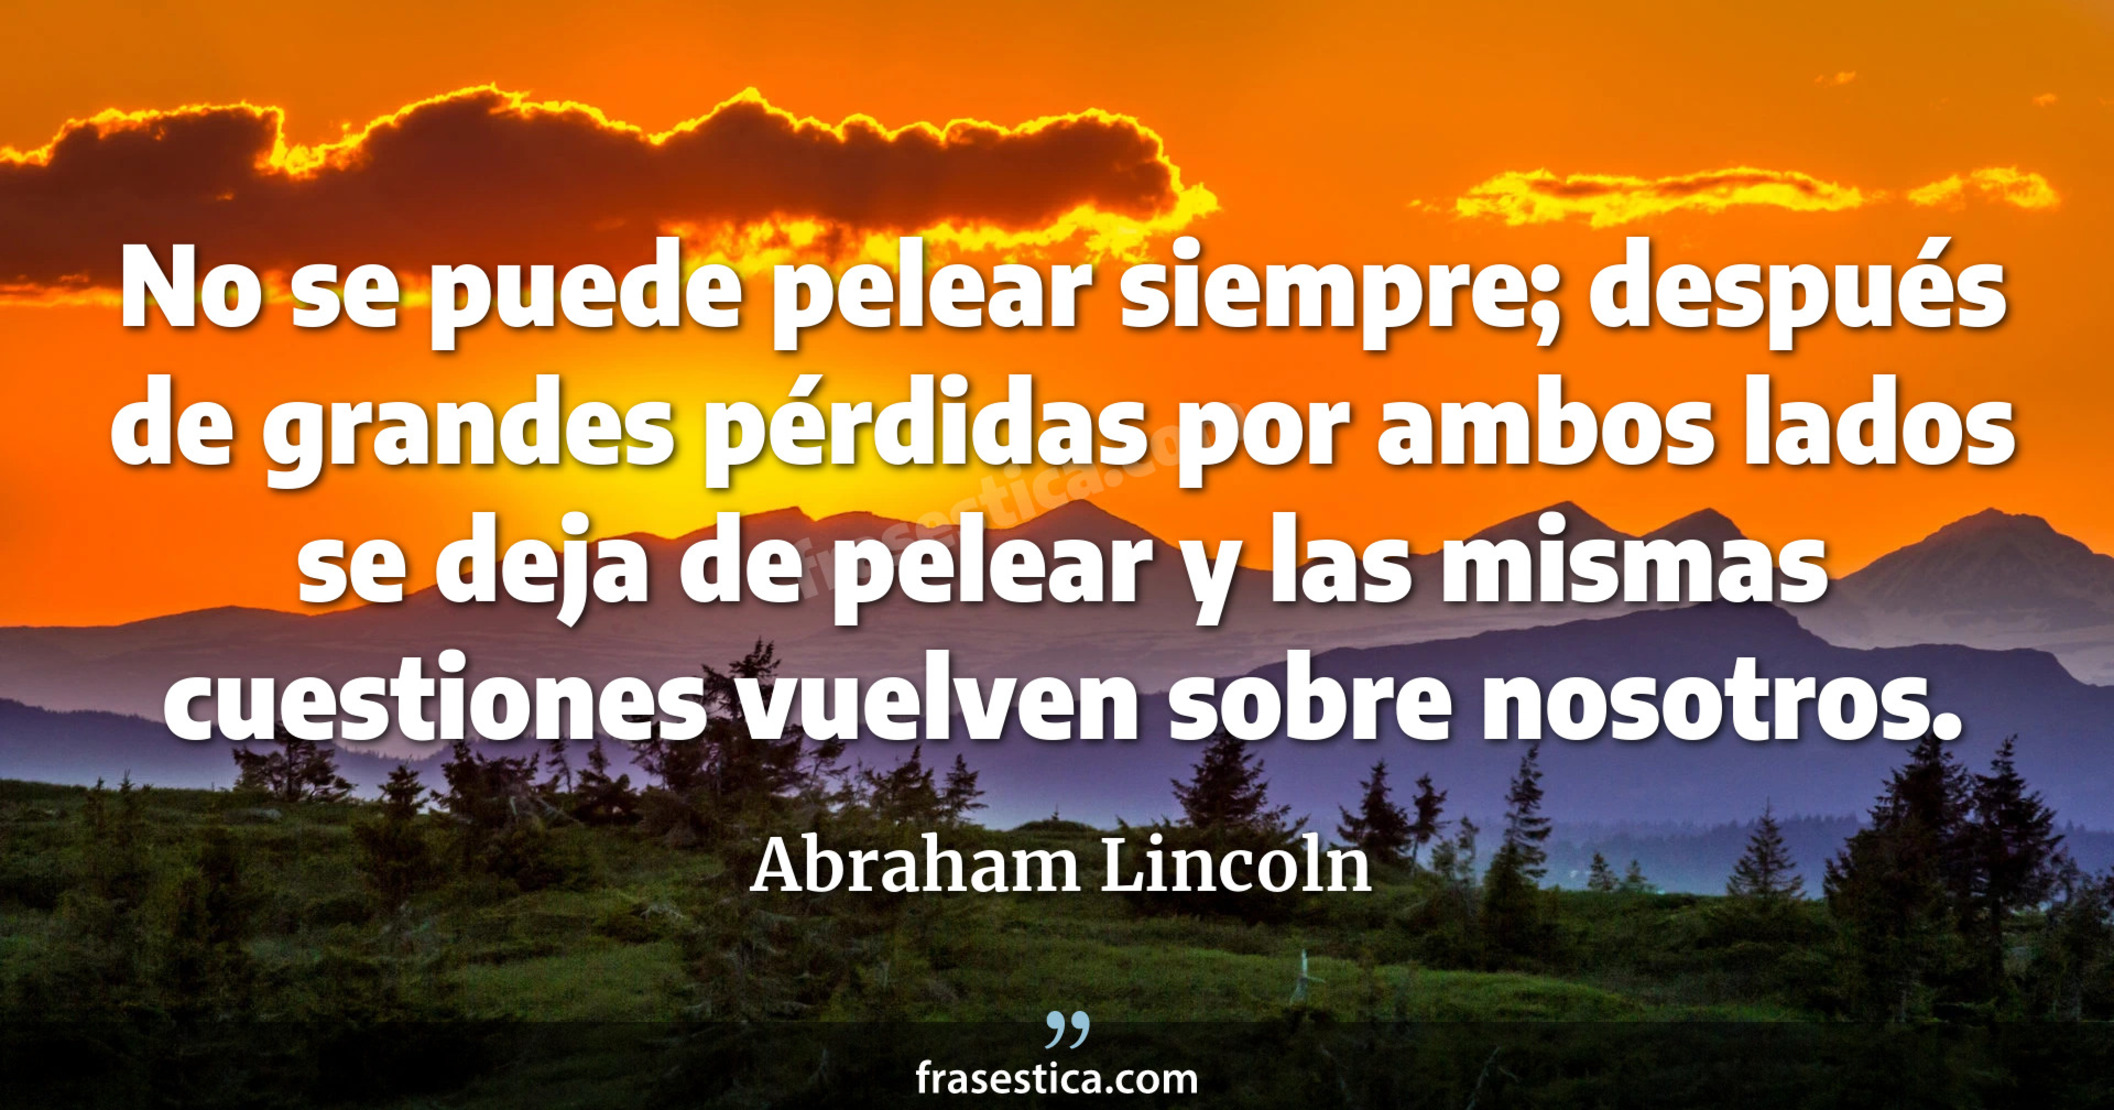 No se puede pelear siempre; después de grandes pérdidas por ambos lados se deja de pelear y las mismas cuestiones vuelven sobre nosotros. - Abraham Lincoln